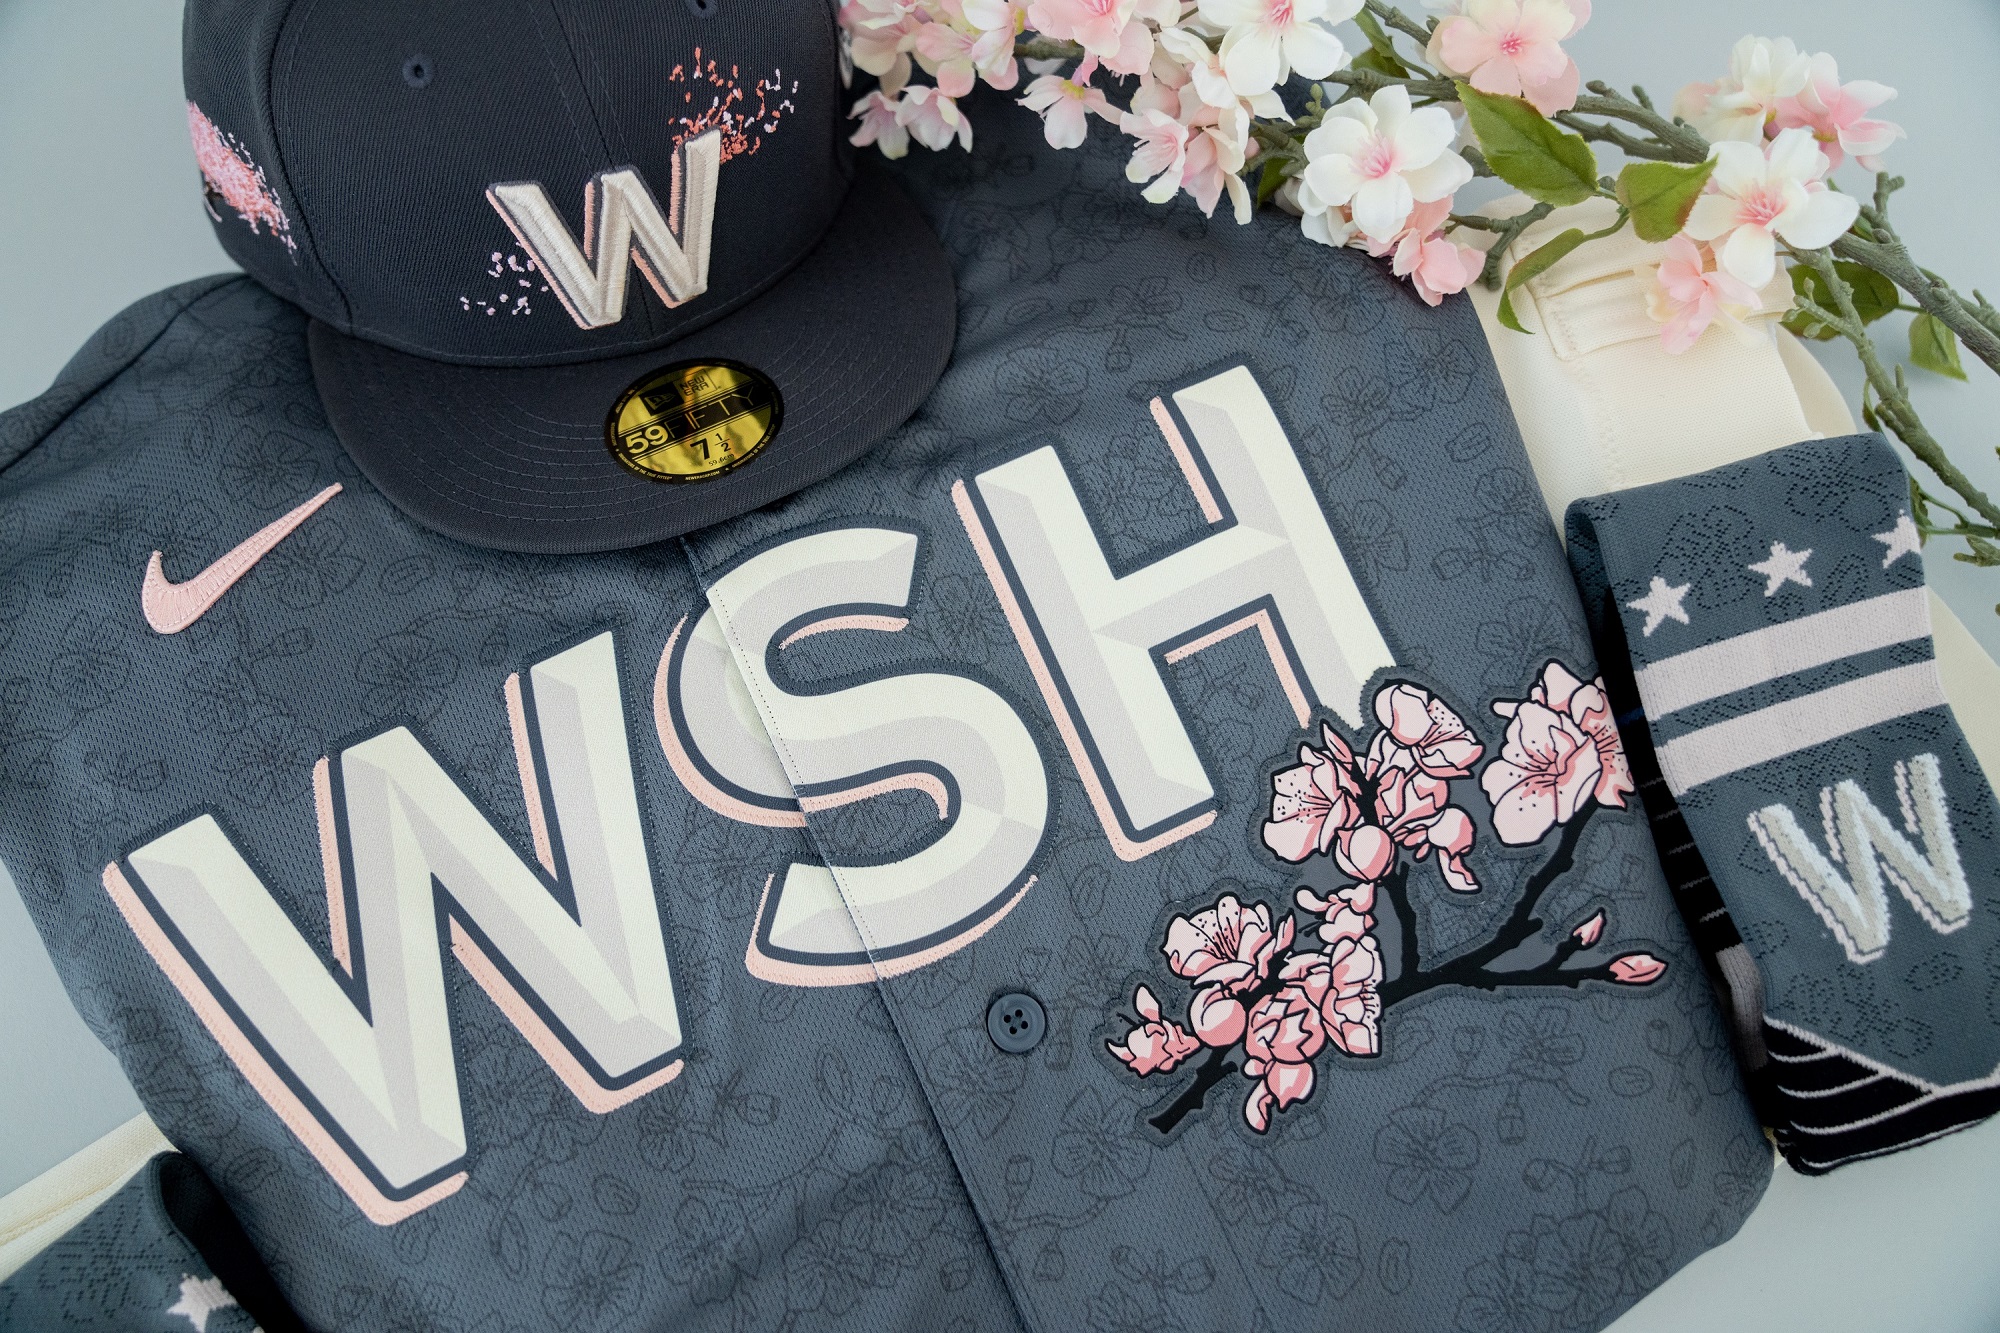 Washington Capitals cherry blossom jerseys revealed